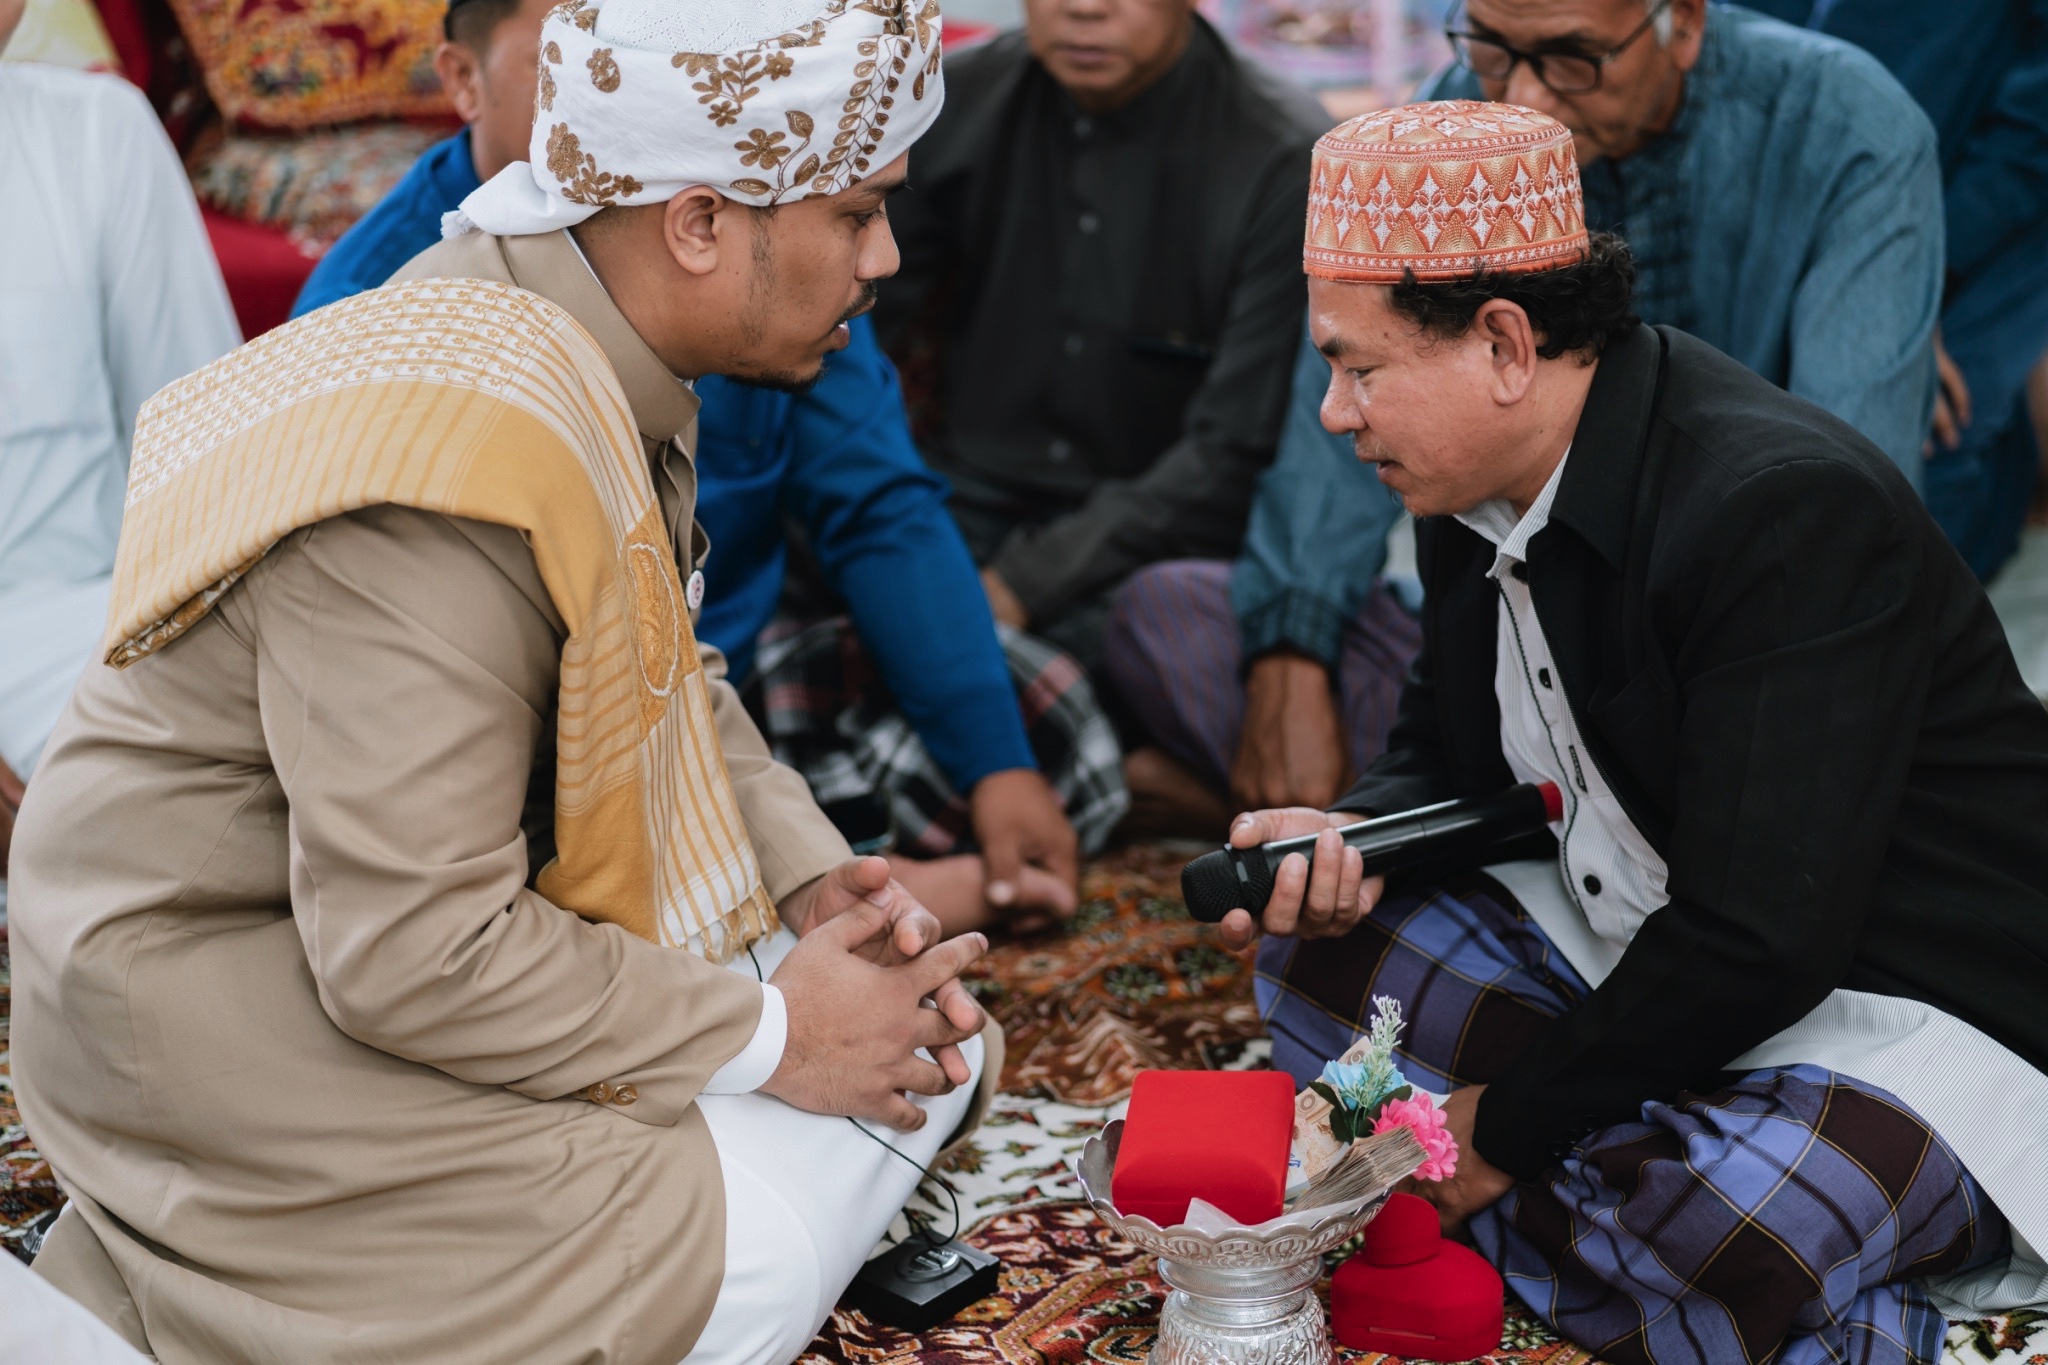 พิธีแต่งงานแบบอิสลาม มีขั้นตอนอย่างไรบ้าง| as your mind wedding planner